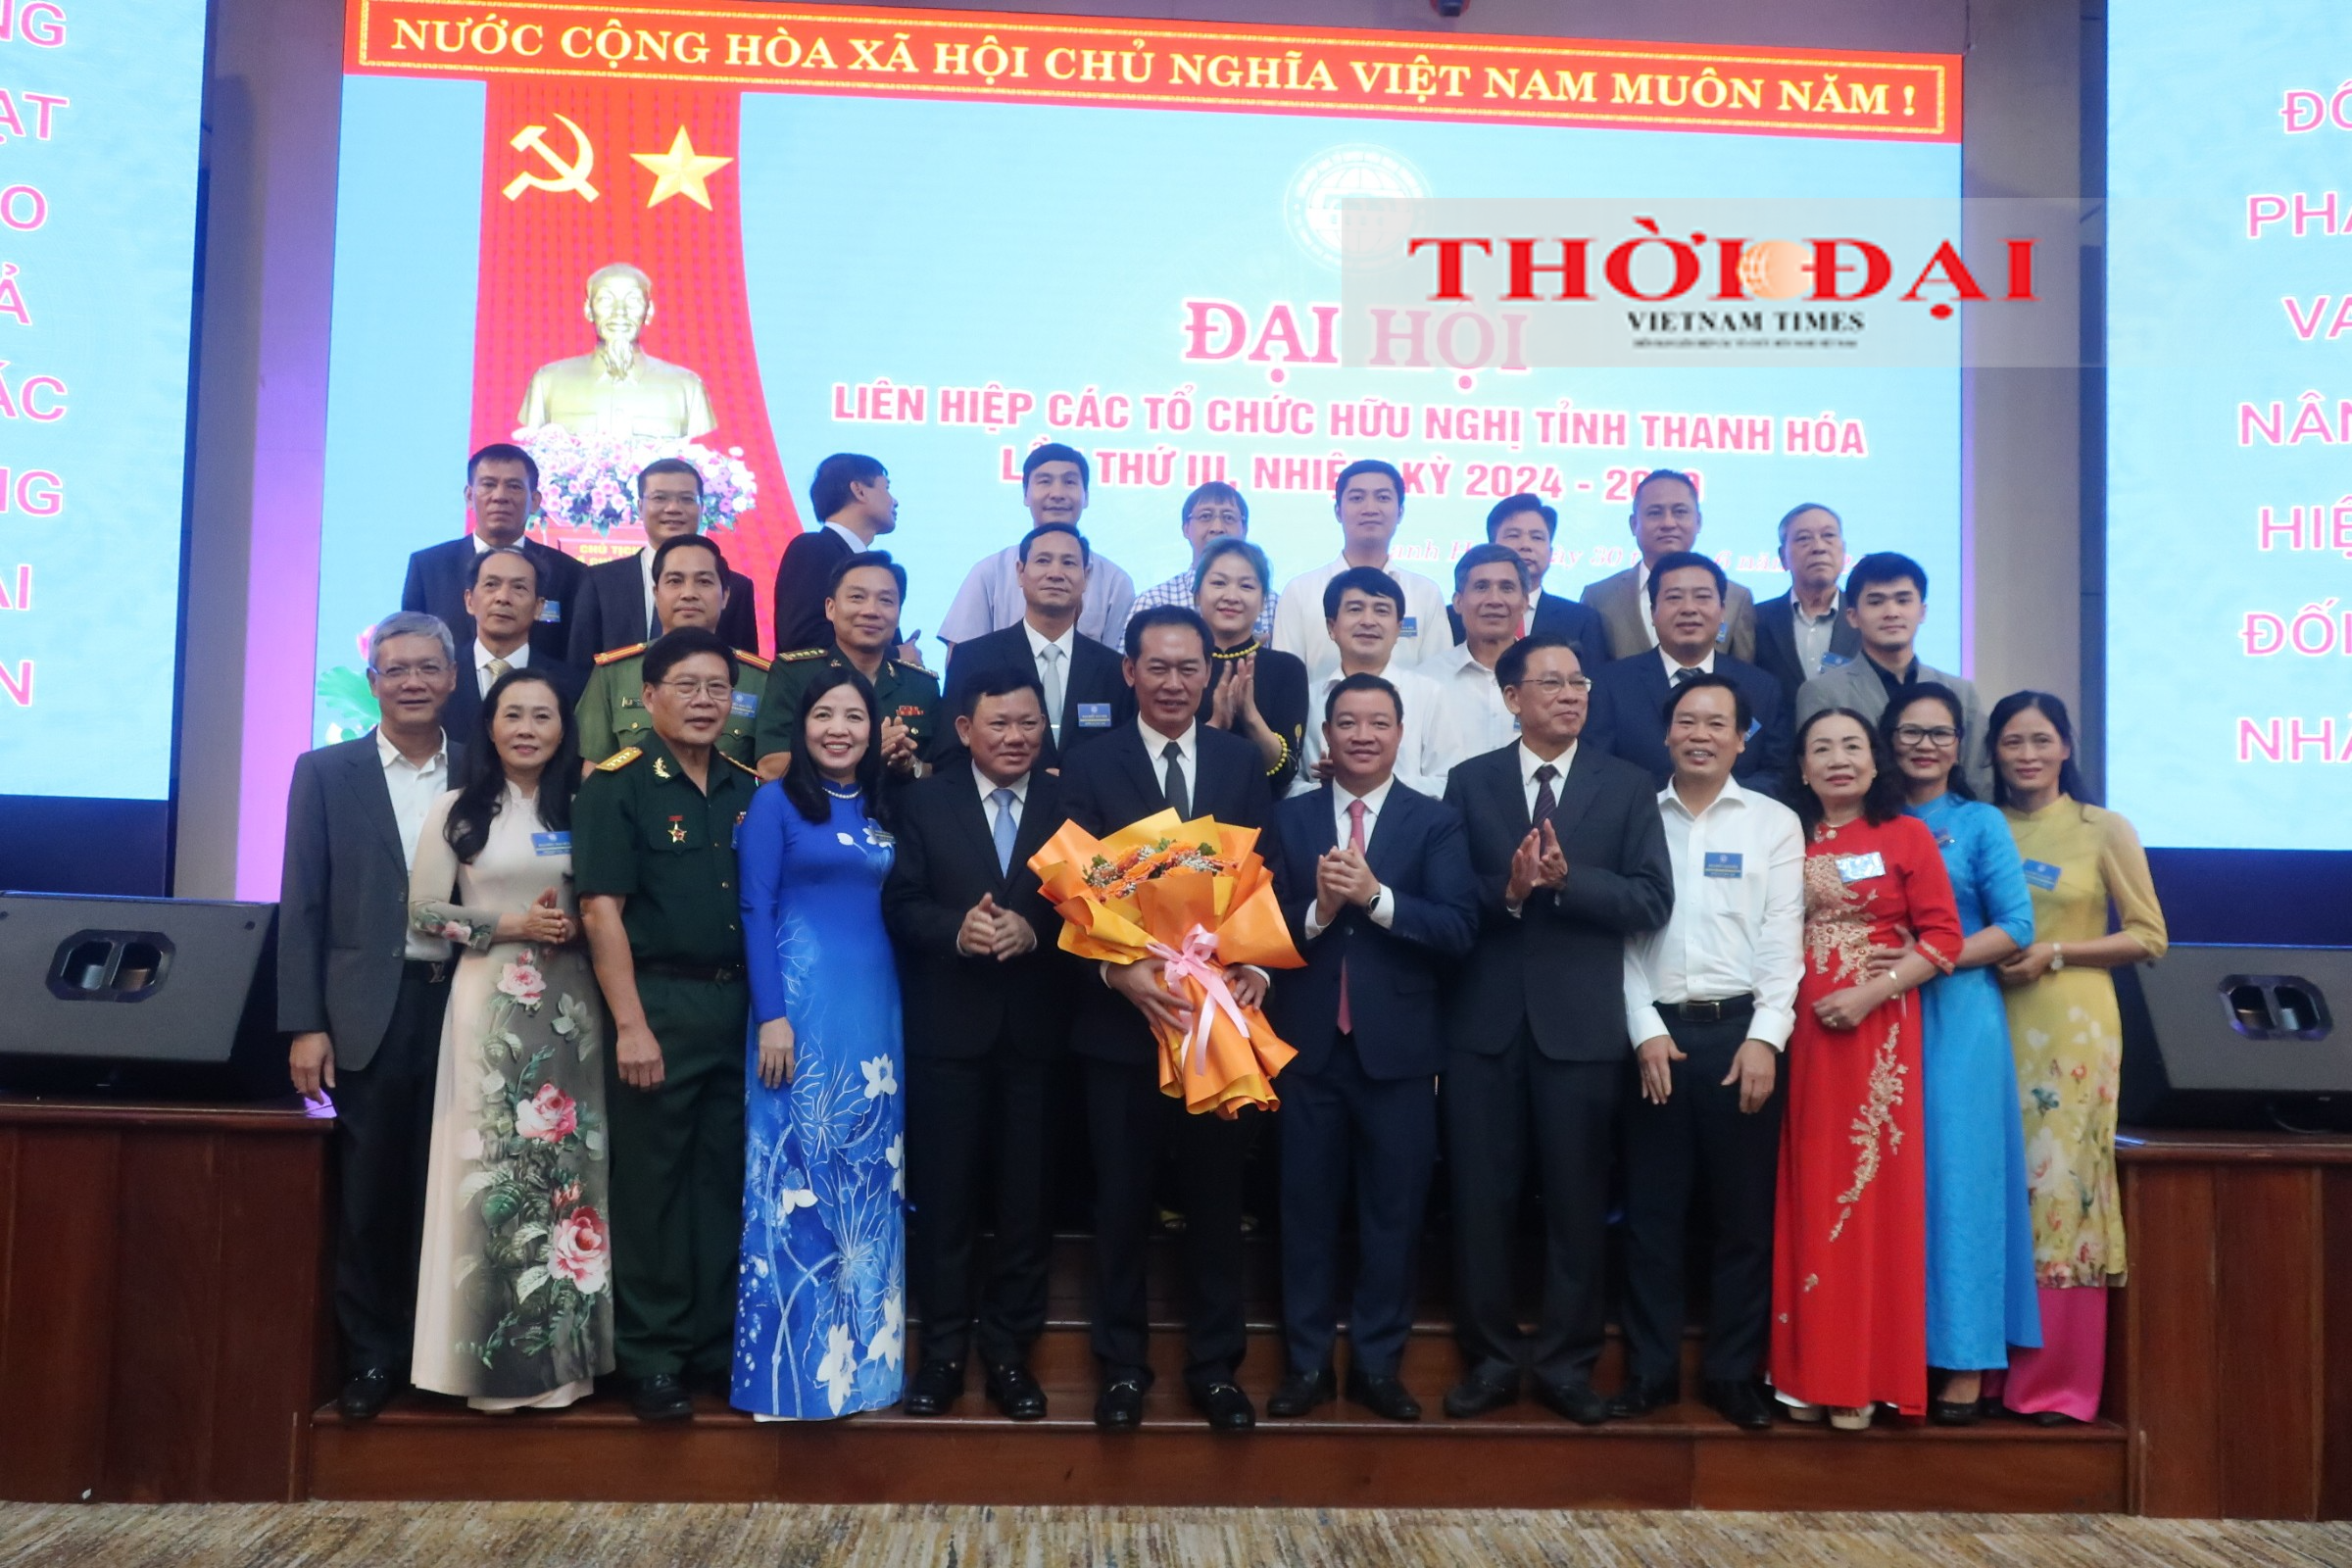 Ông Trịnh Tuấn Sinh được bầu làm Chủ tịch Liên hiệp các tổ chức hữu nghị tỉnh Thanh Hóa